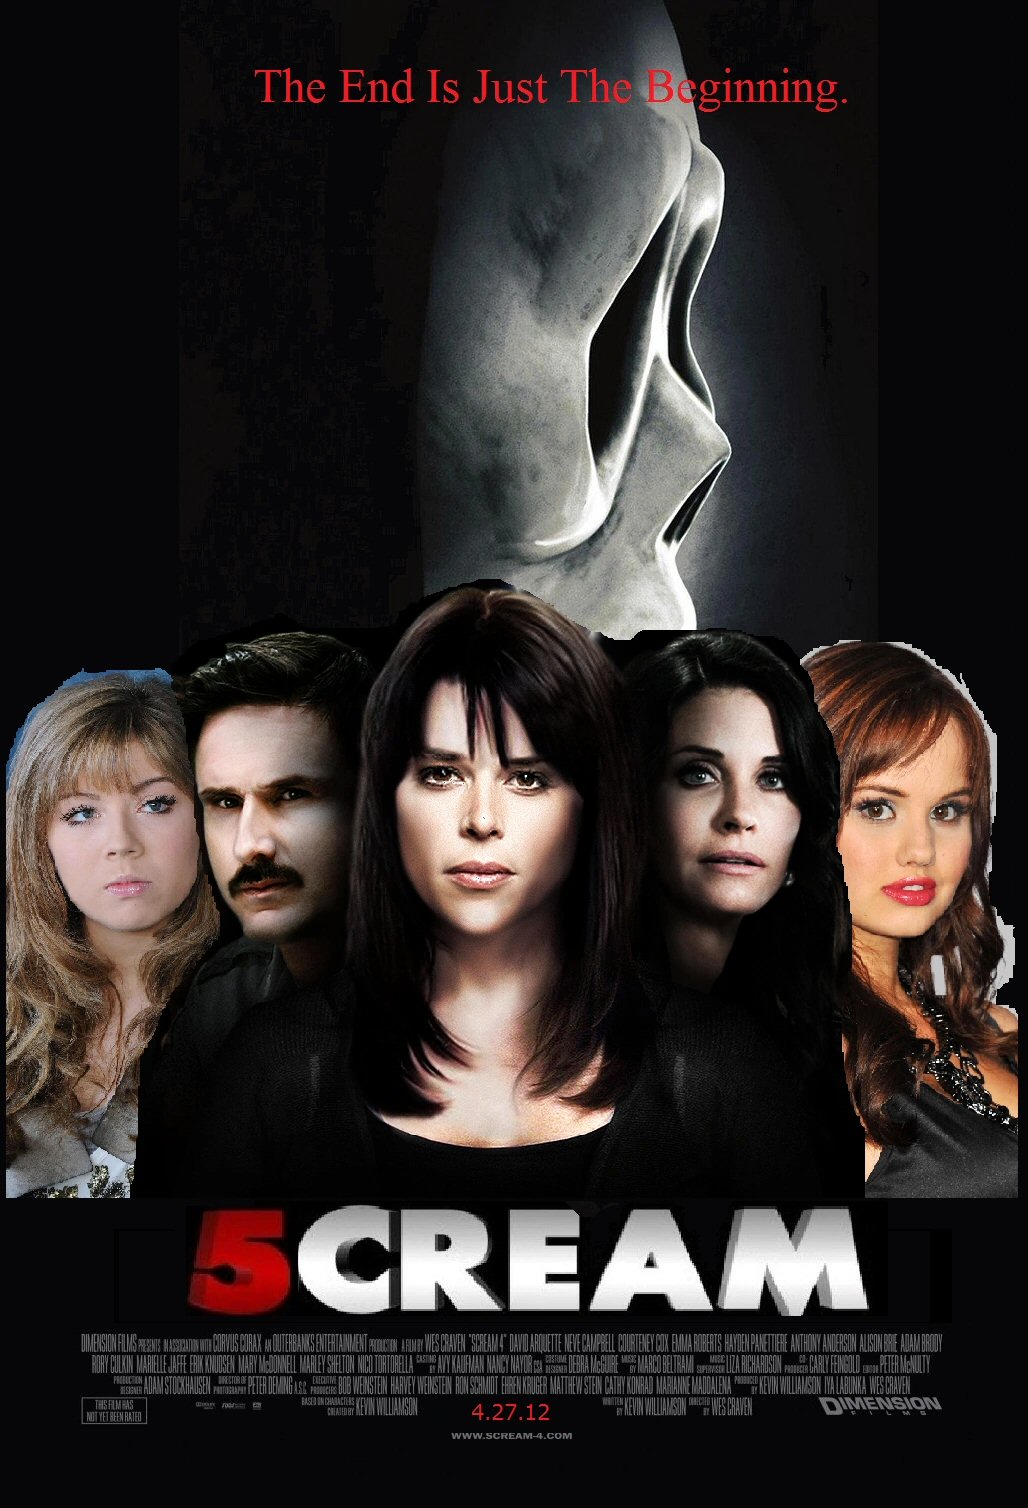 scream 5 movie release date